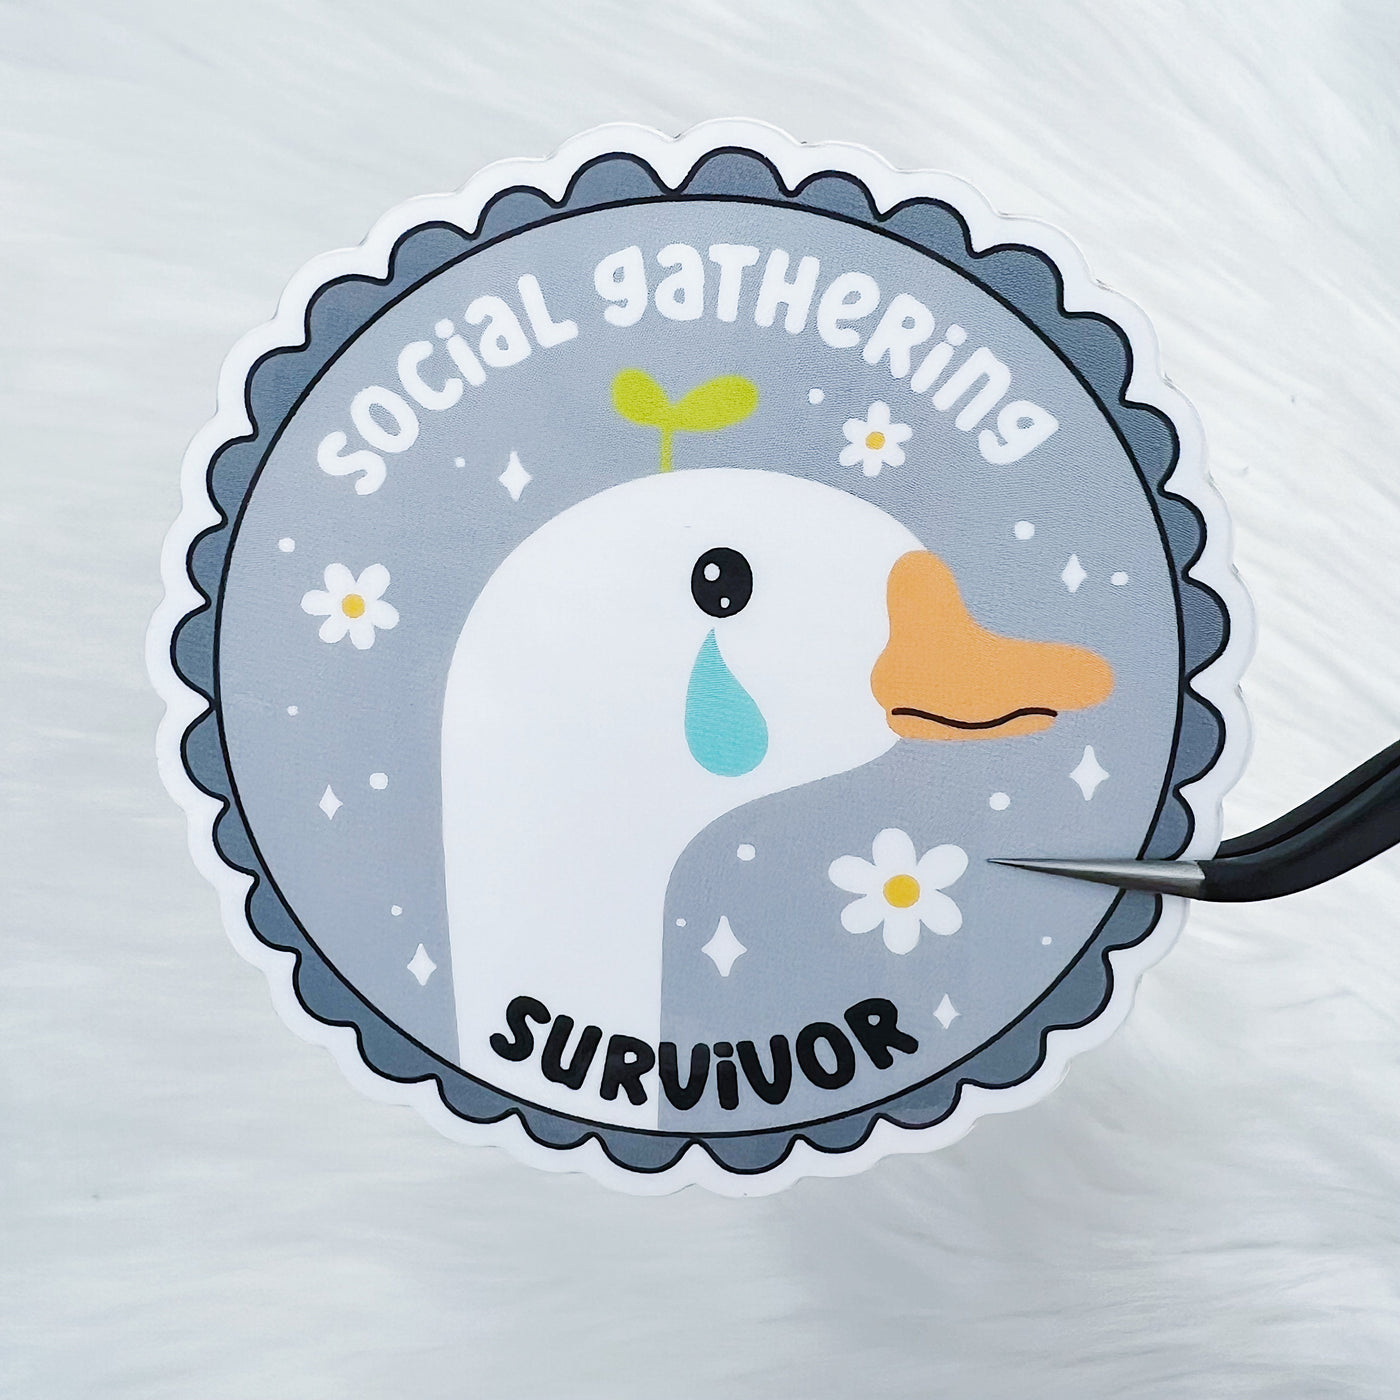 Social Gathering Survivor Vinyl Sticker Die Cut